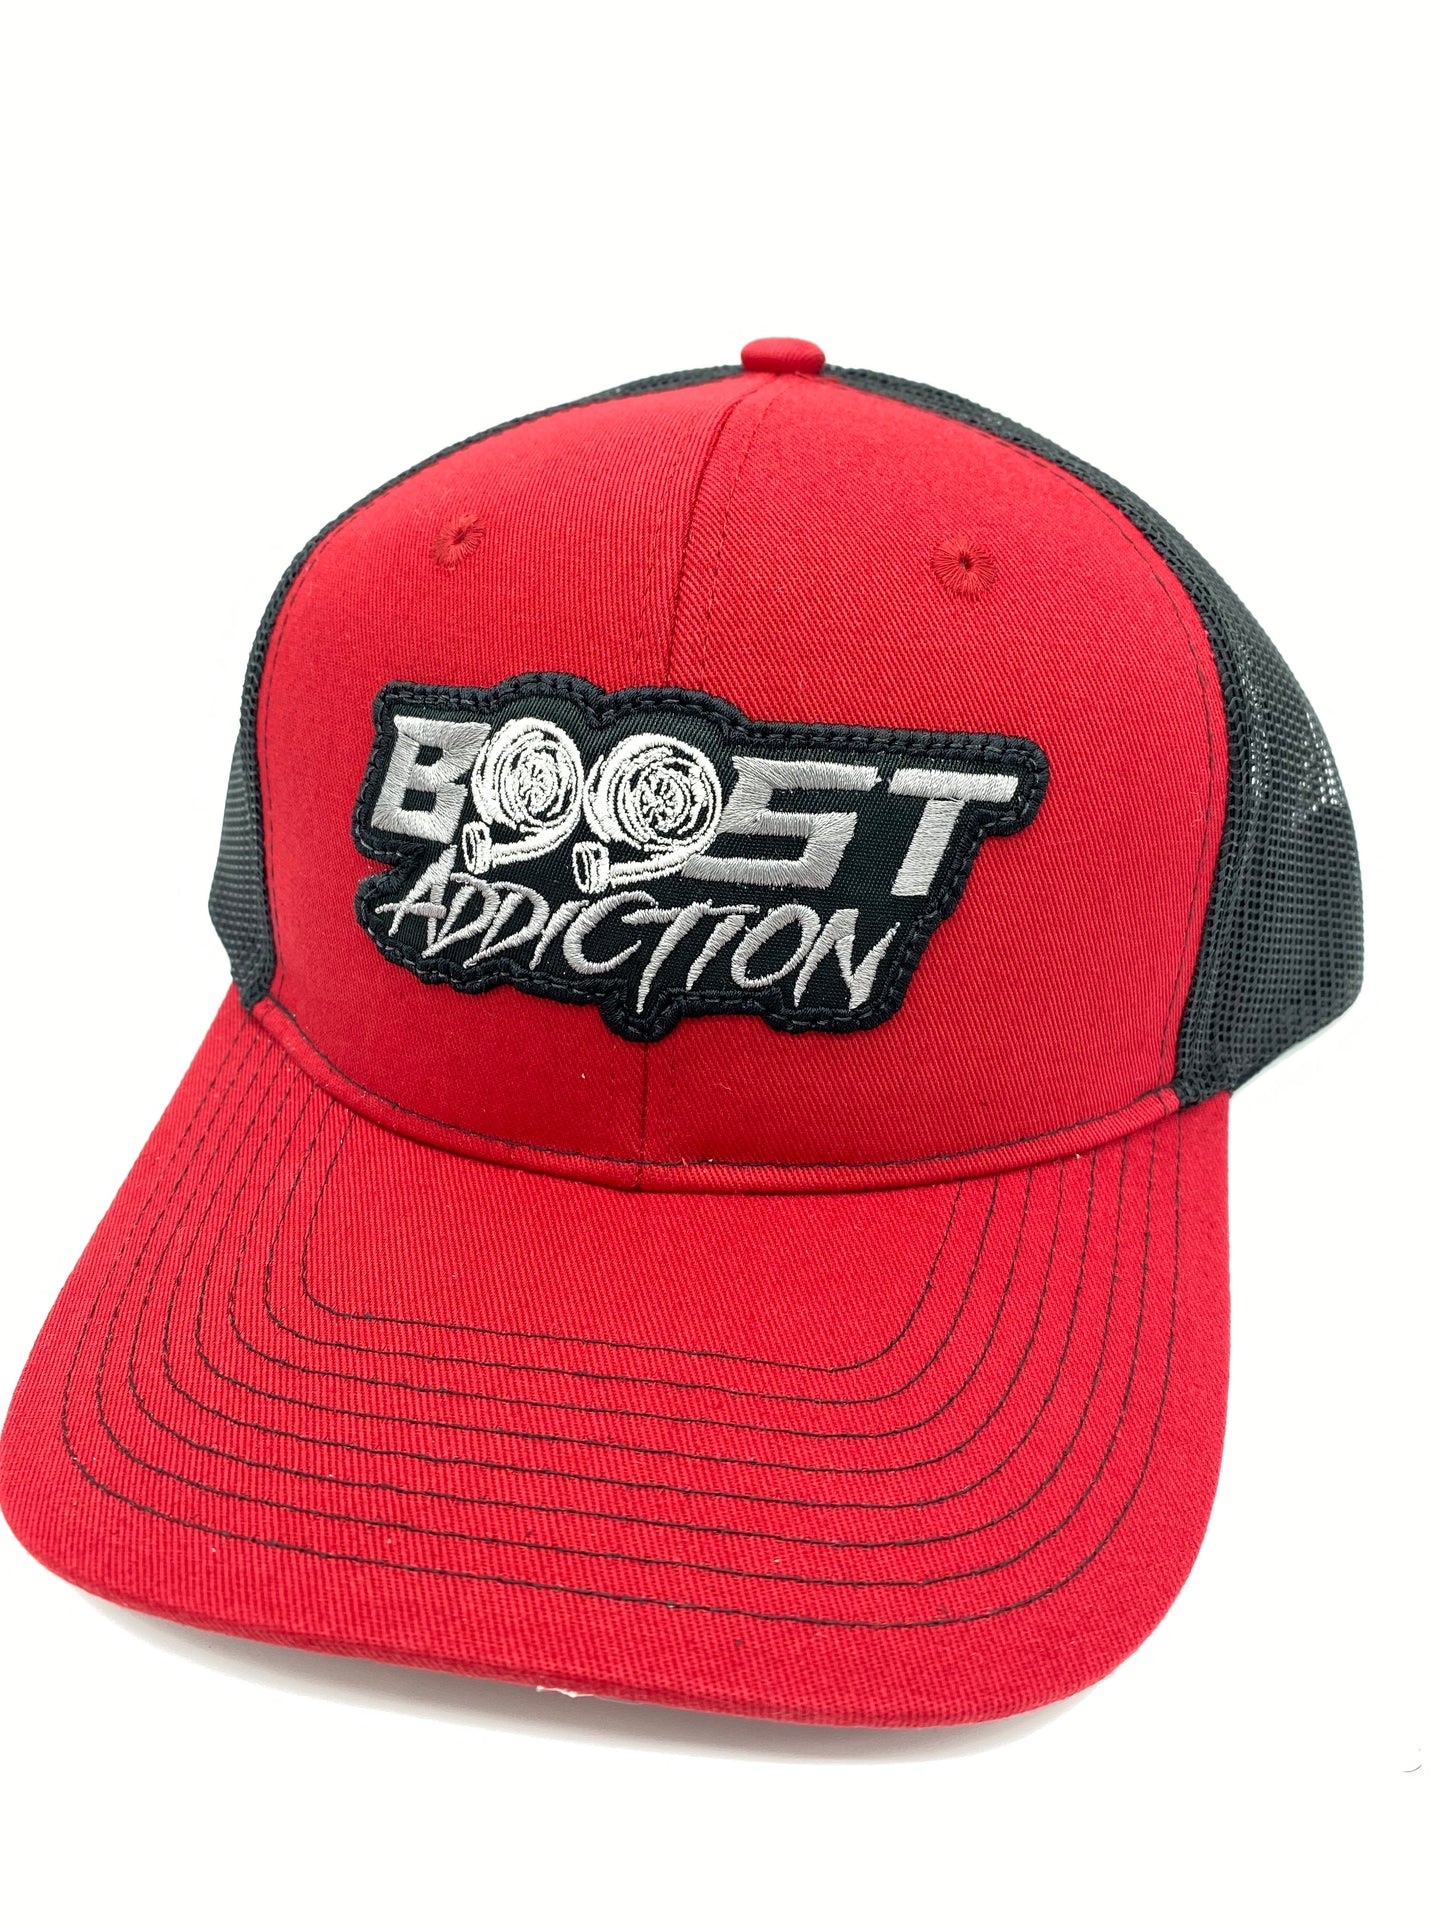 Boost Addiction hat